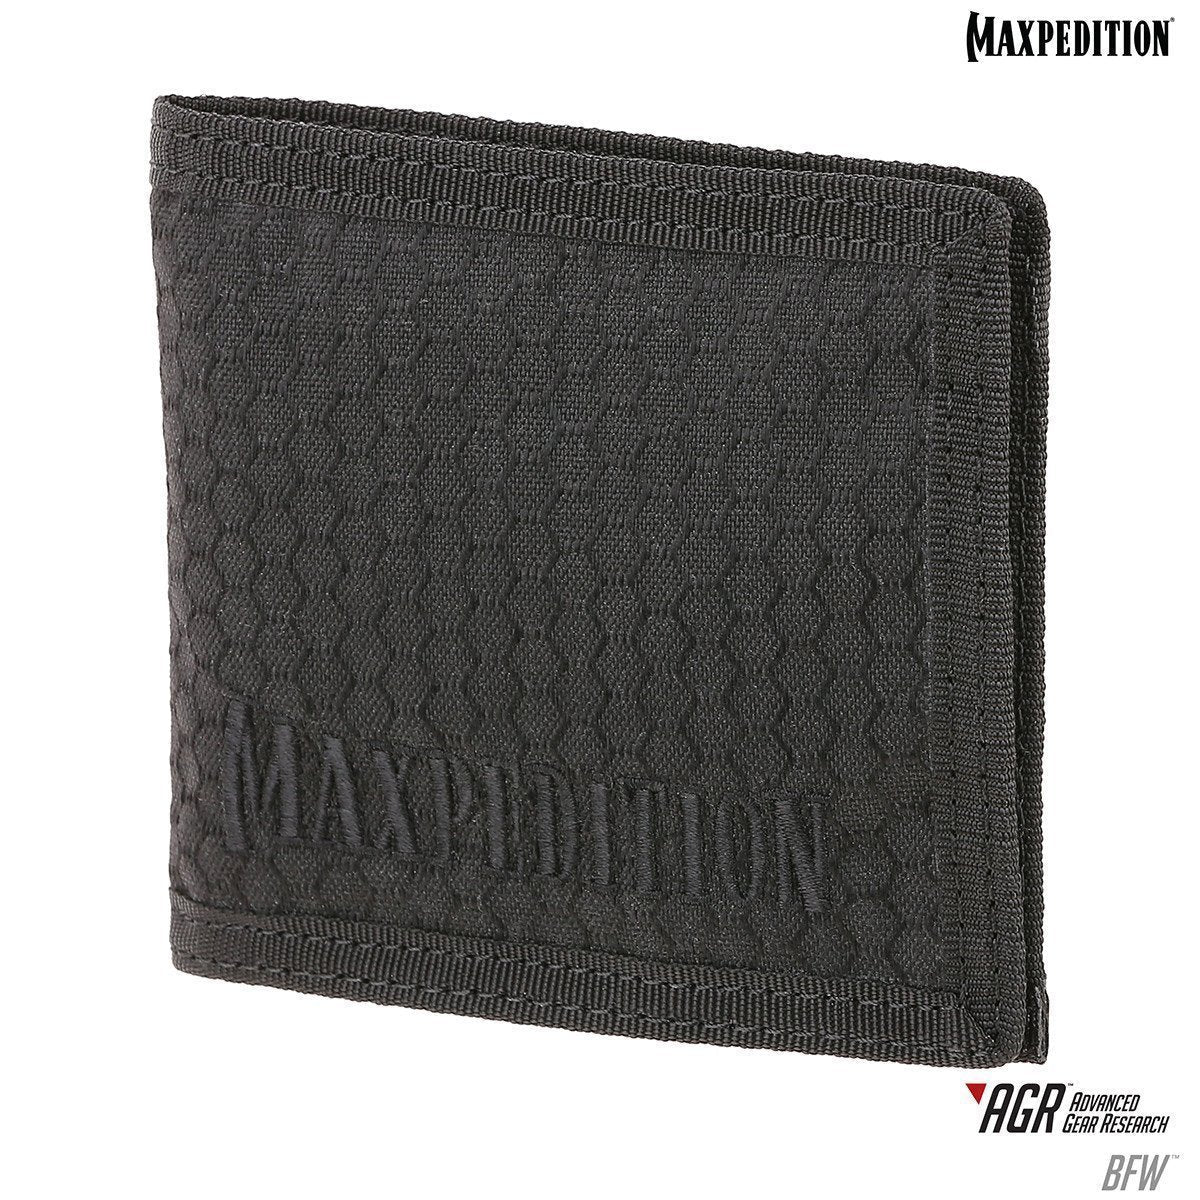 Maxpedition BFW Bi-Fold Wallet Black Tactical Distributors Ltd New Zealand